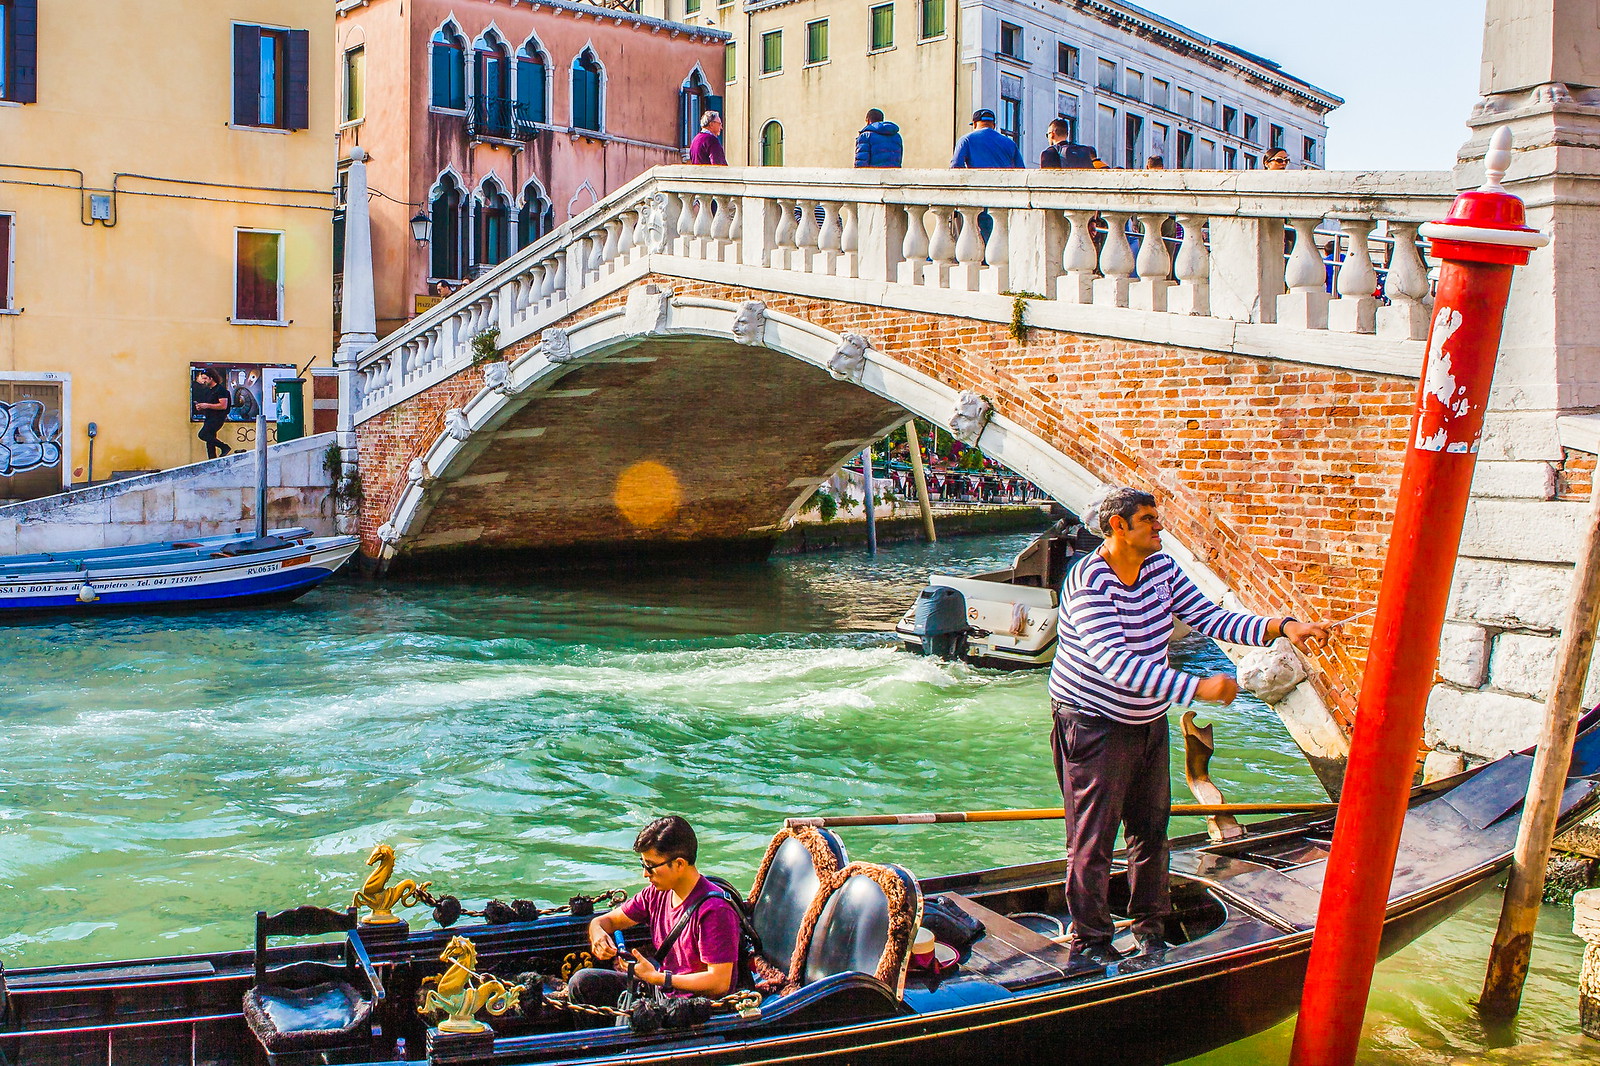 2019叹息桥_旅游攻略_门票_地址_游记点评,威尼斯旅游景点推荐 - 去哪儿攻略社区